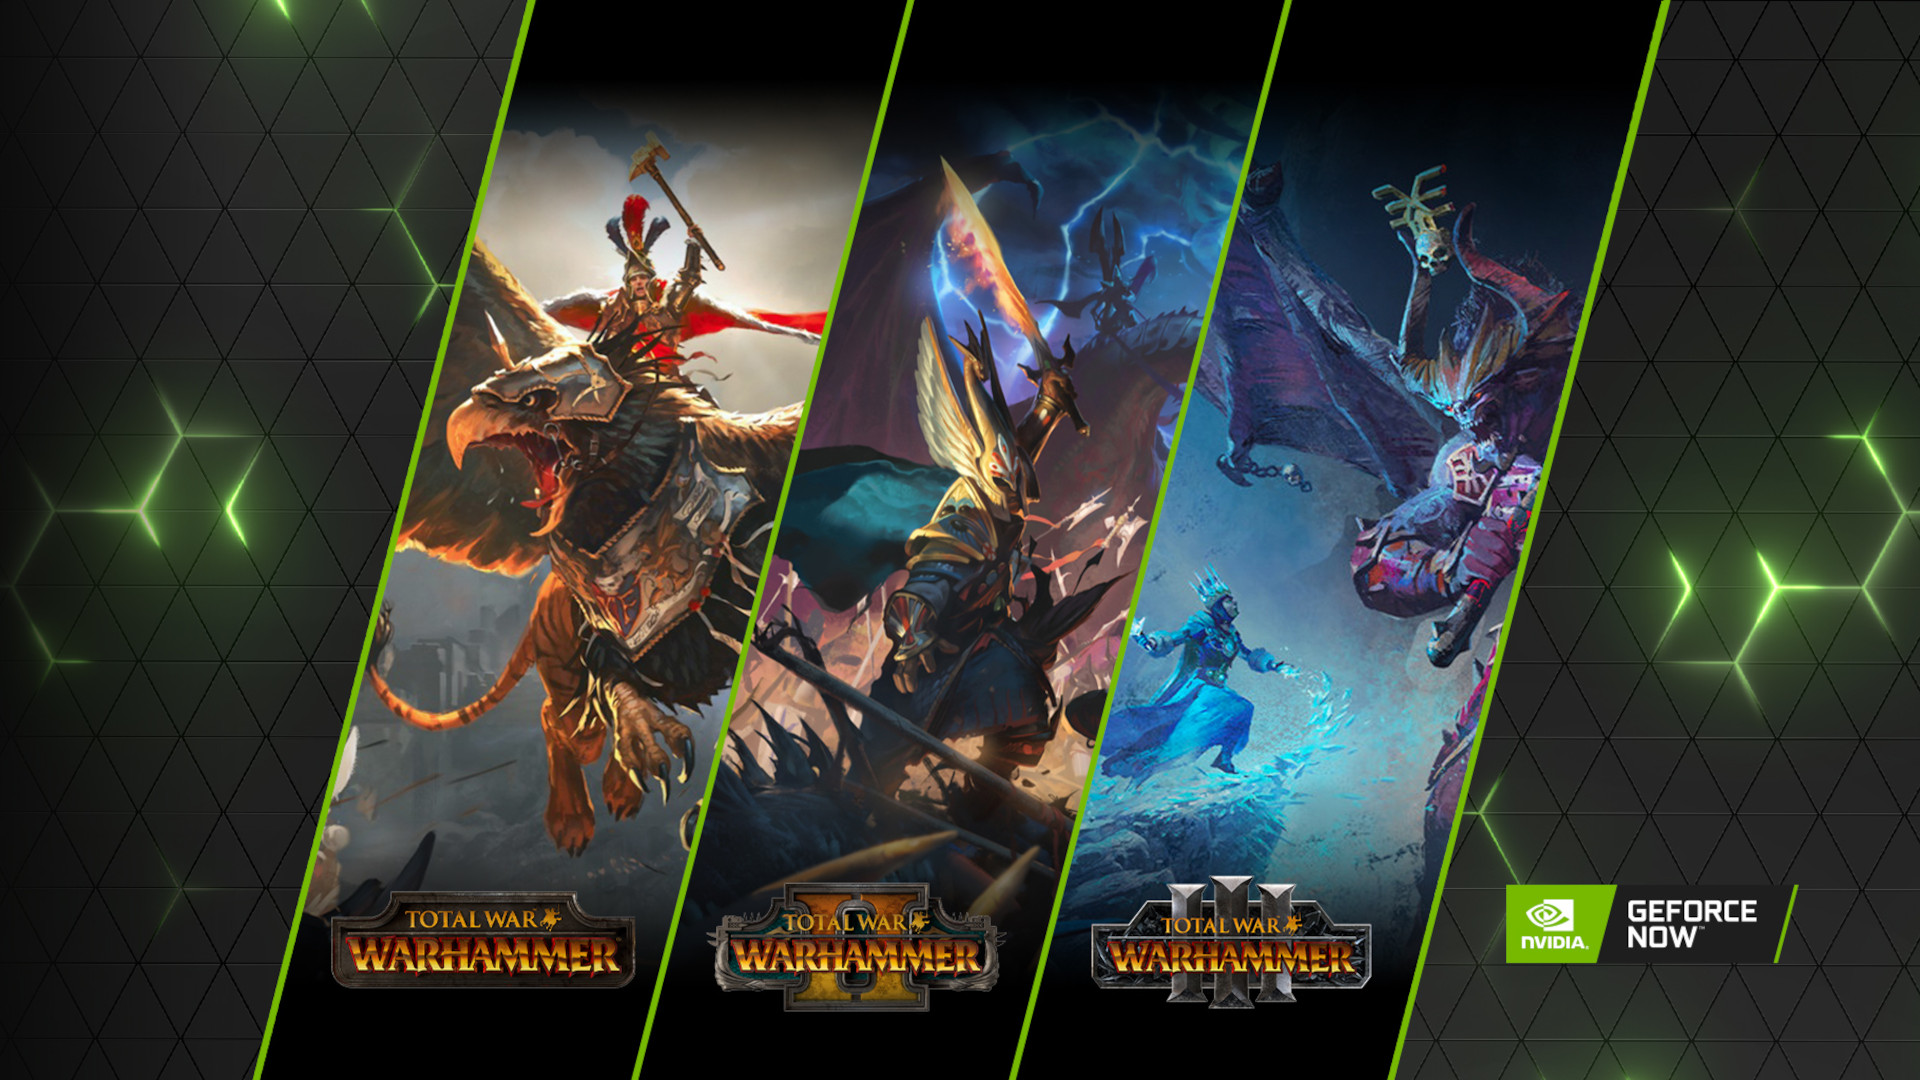 Total Warhammer serisindeki her giriş için kapak resminin snippet'leri birbirine karşı sıralanmıştır